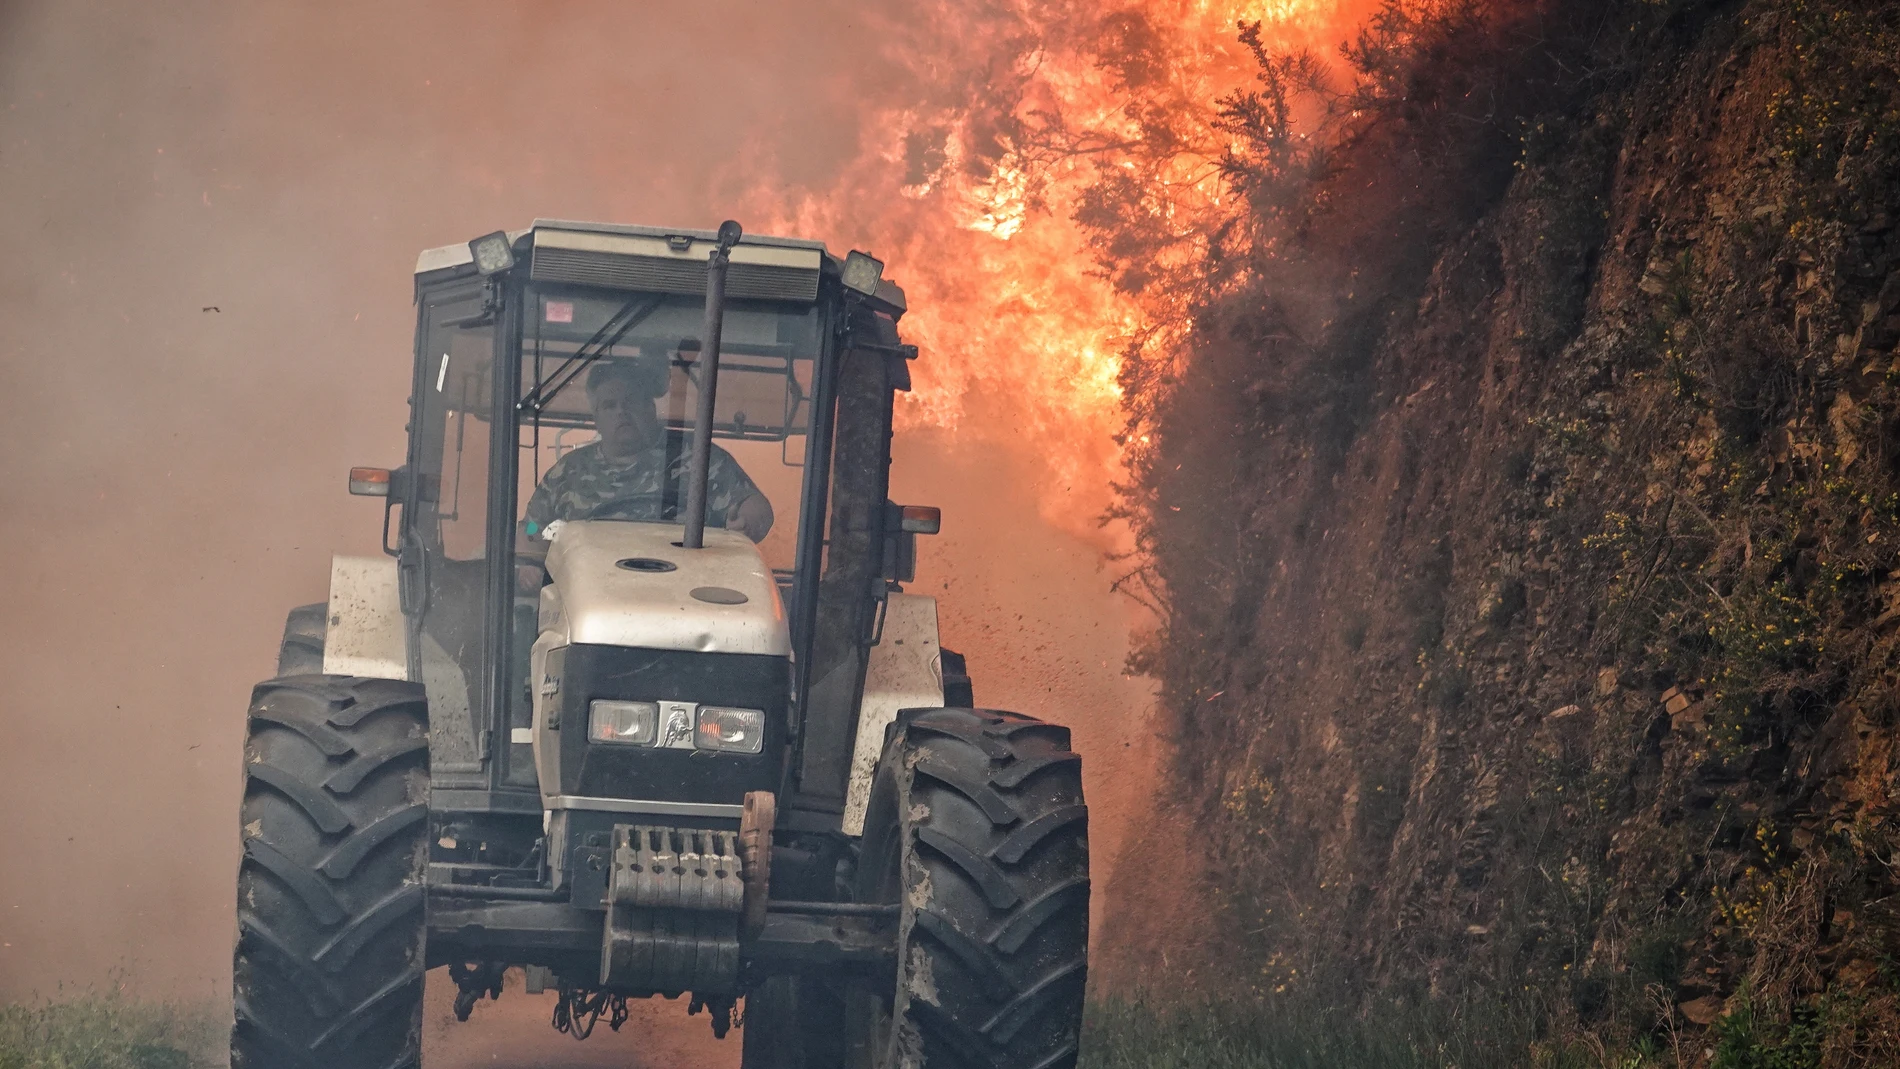 Incendios.- Asturias contabiliza 116 incendios forestales en 35 concejos y arde el Naranco en Oviedo